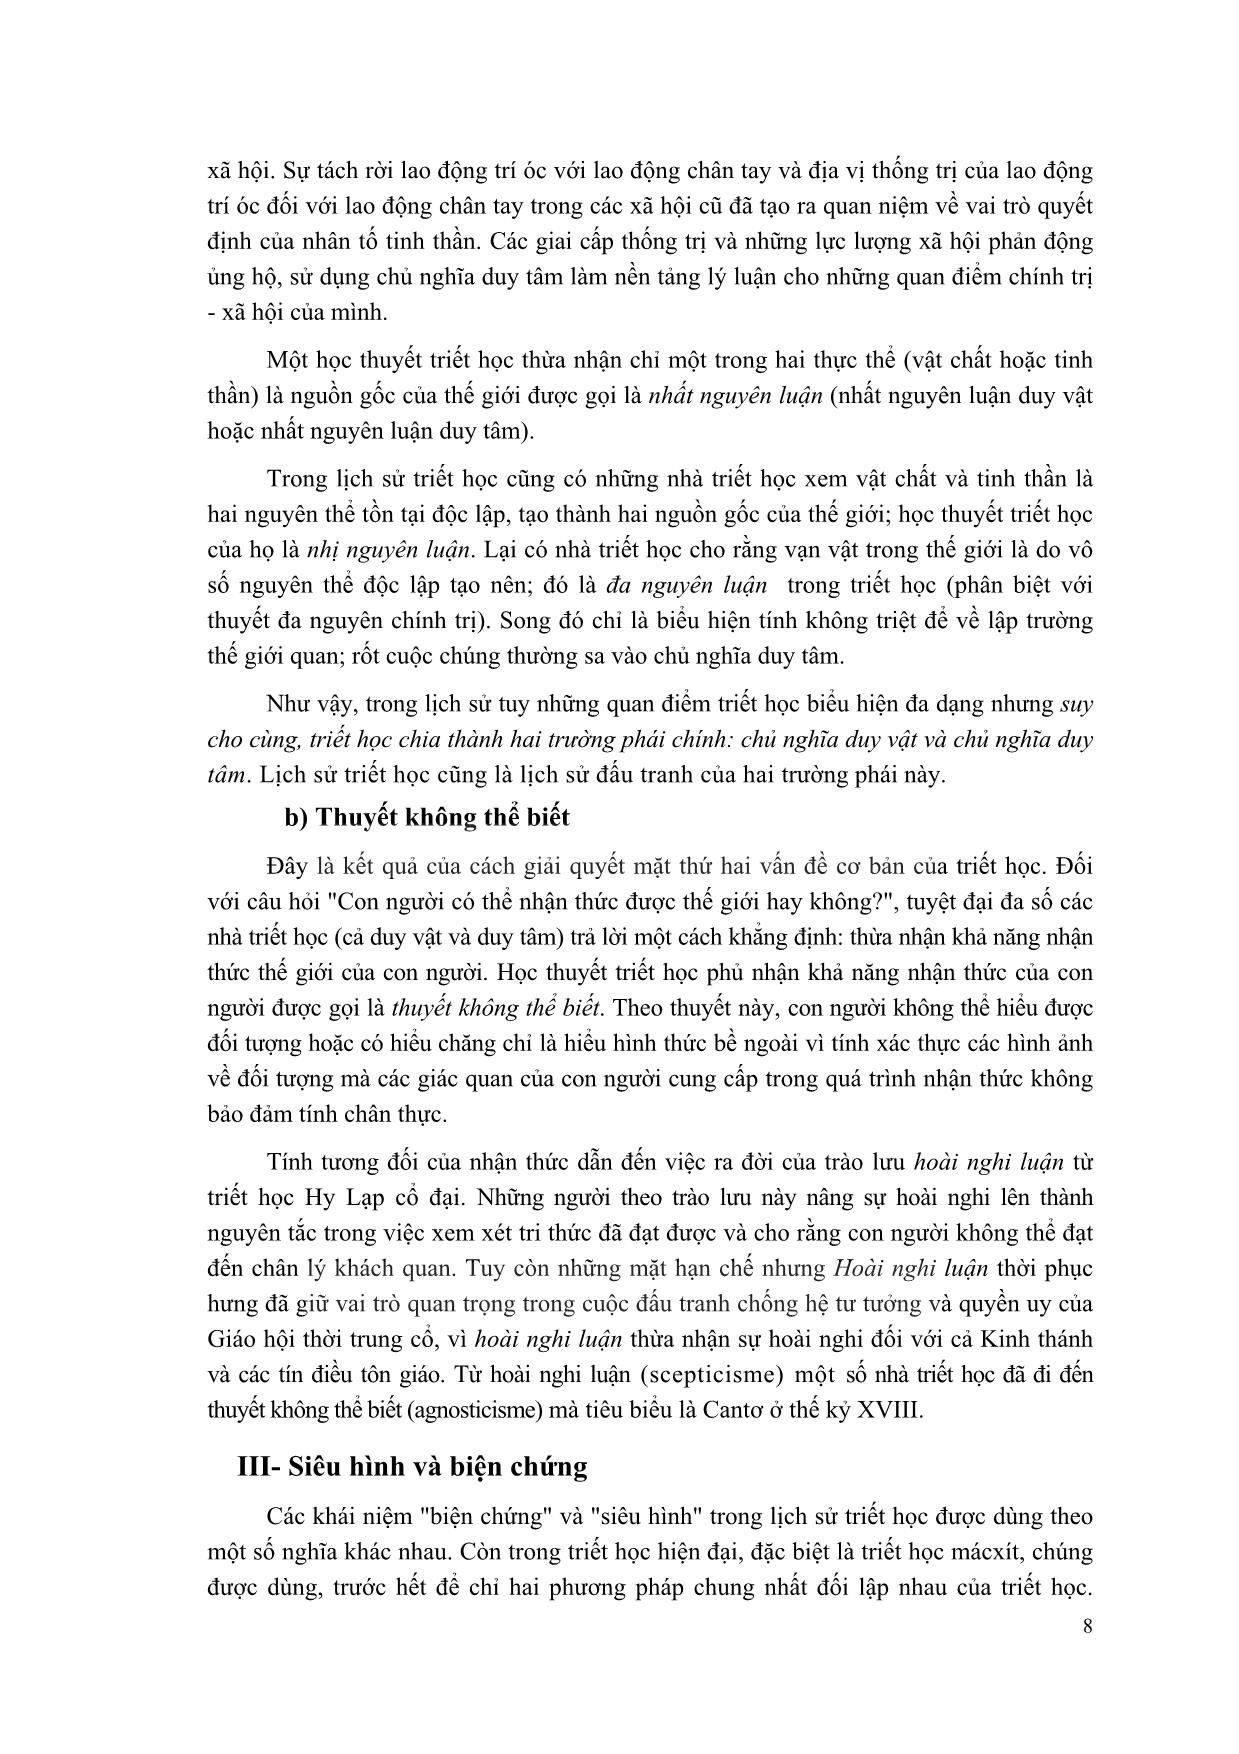 Giáo trình Triết học Mác-Lênin (Mới) trang 9